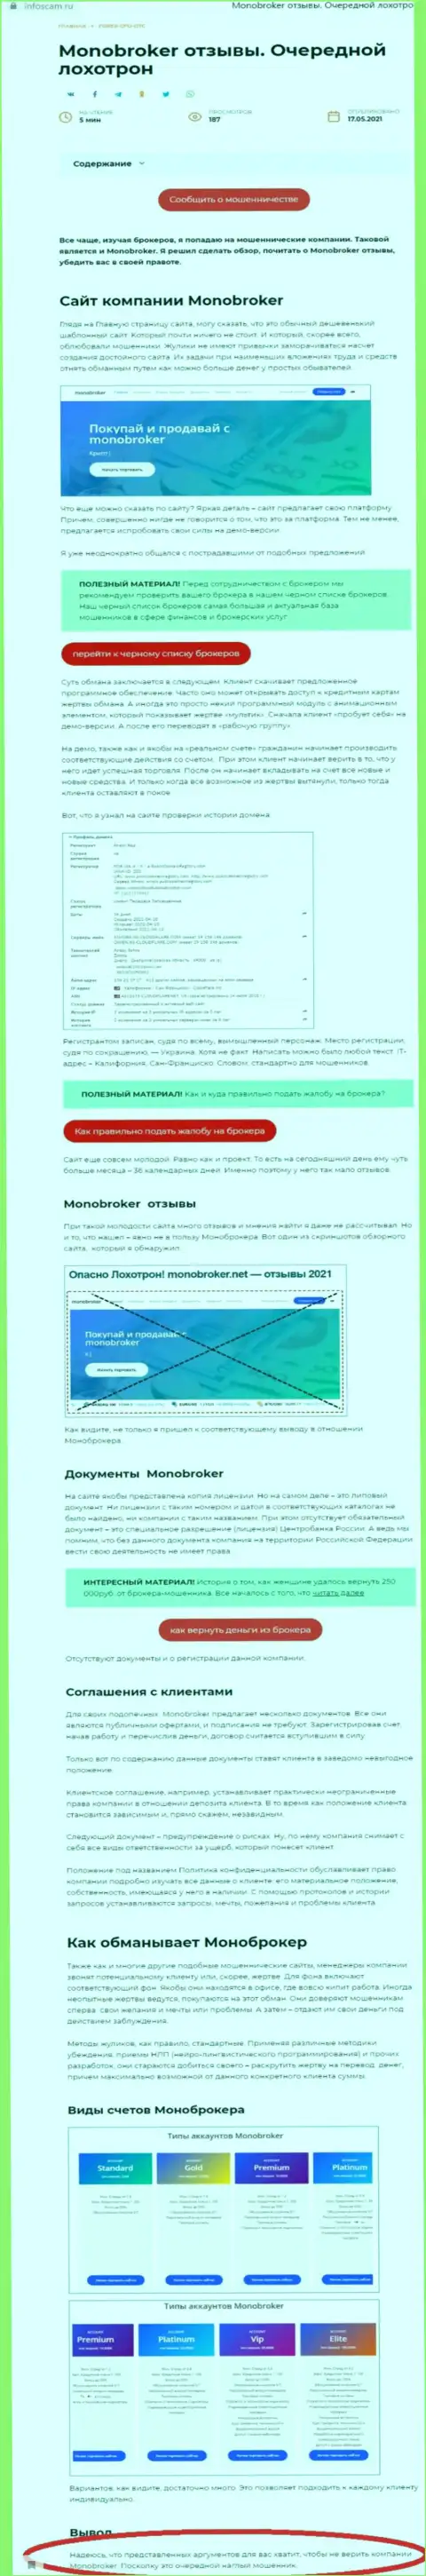 MonoBroker Net - это компания, совместное взаимодействие с которой доставляет только убытки (обзор манипуляций)